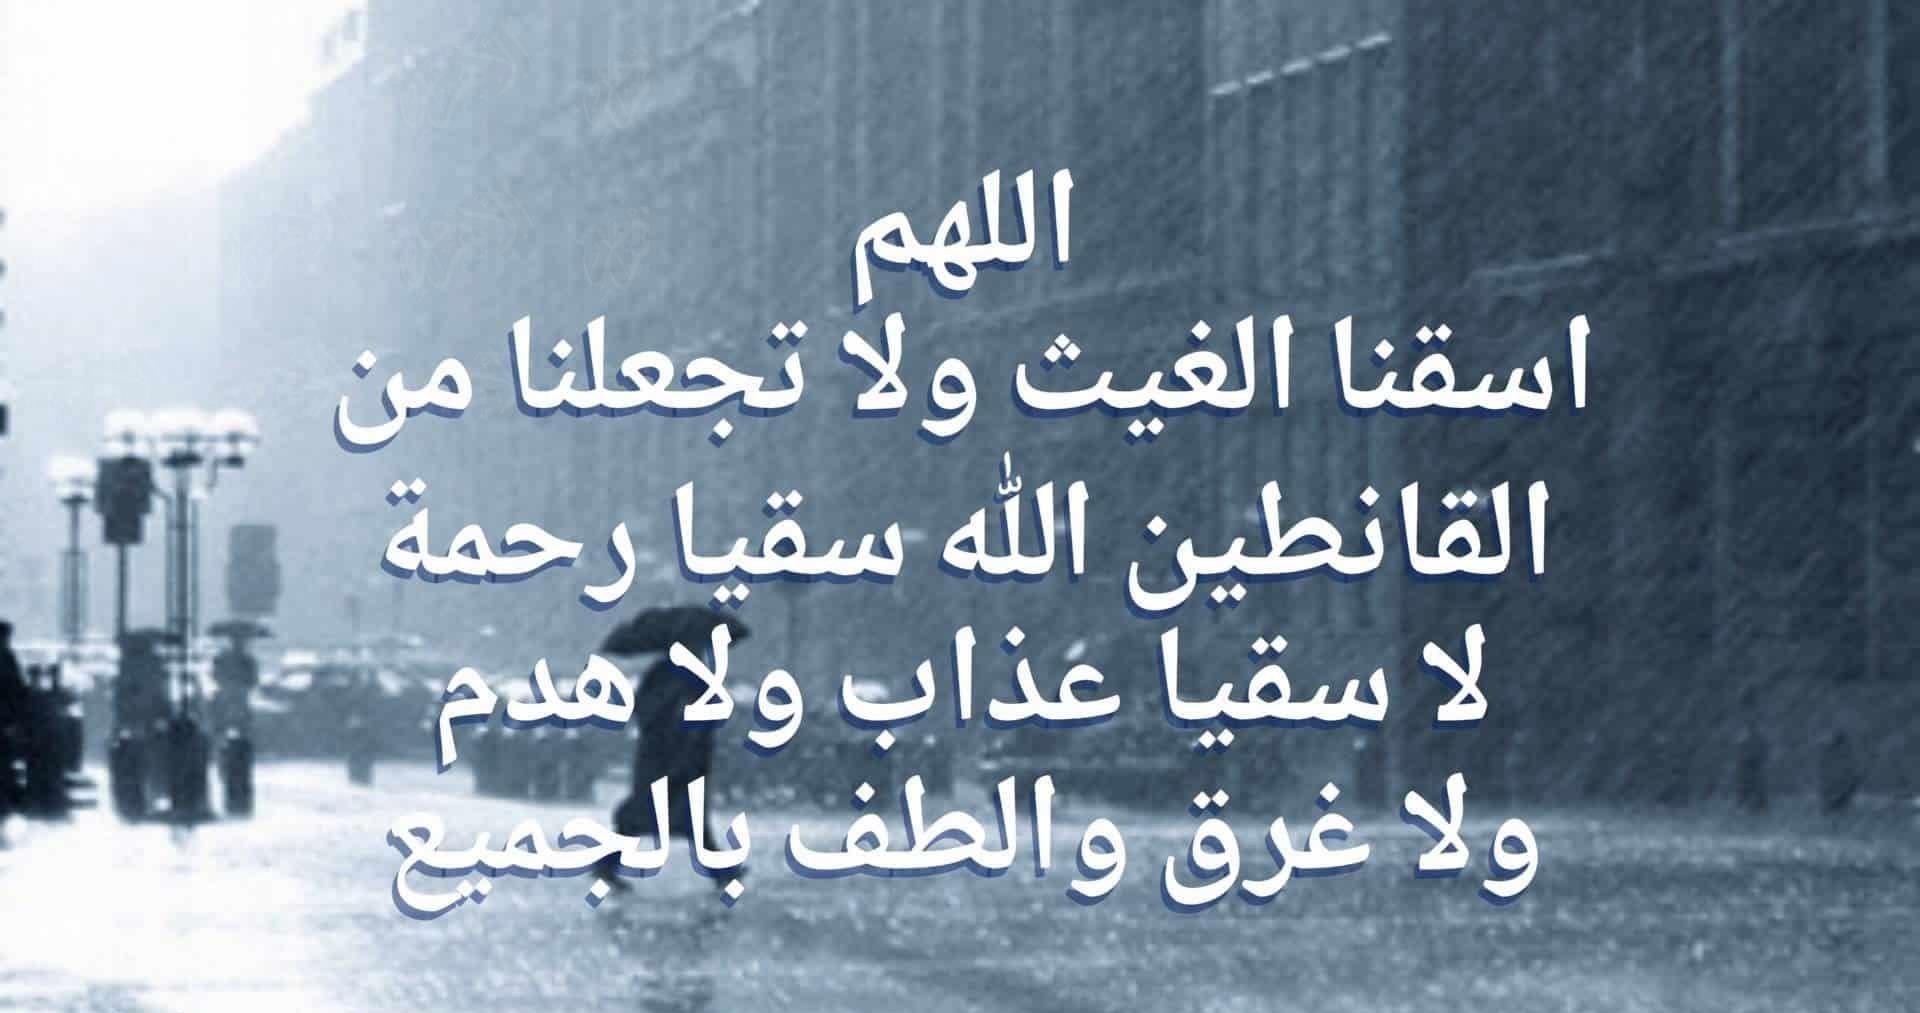 دعاء المطر.. أكثر الأدعية تداولًا وأكثرها استجابة - بوابة الأهرام